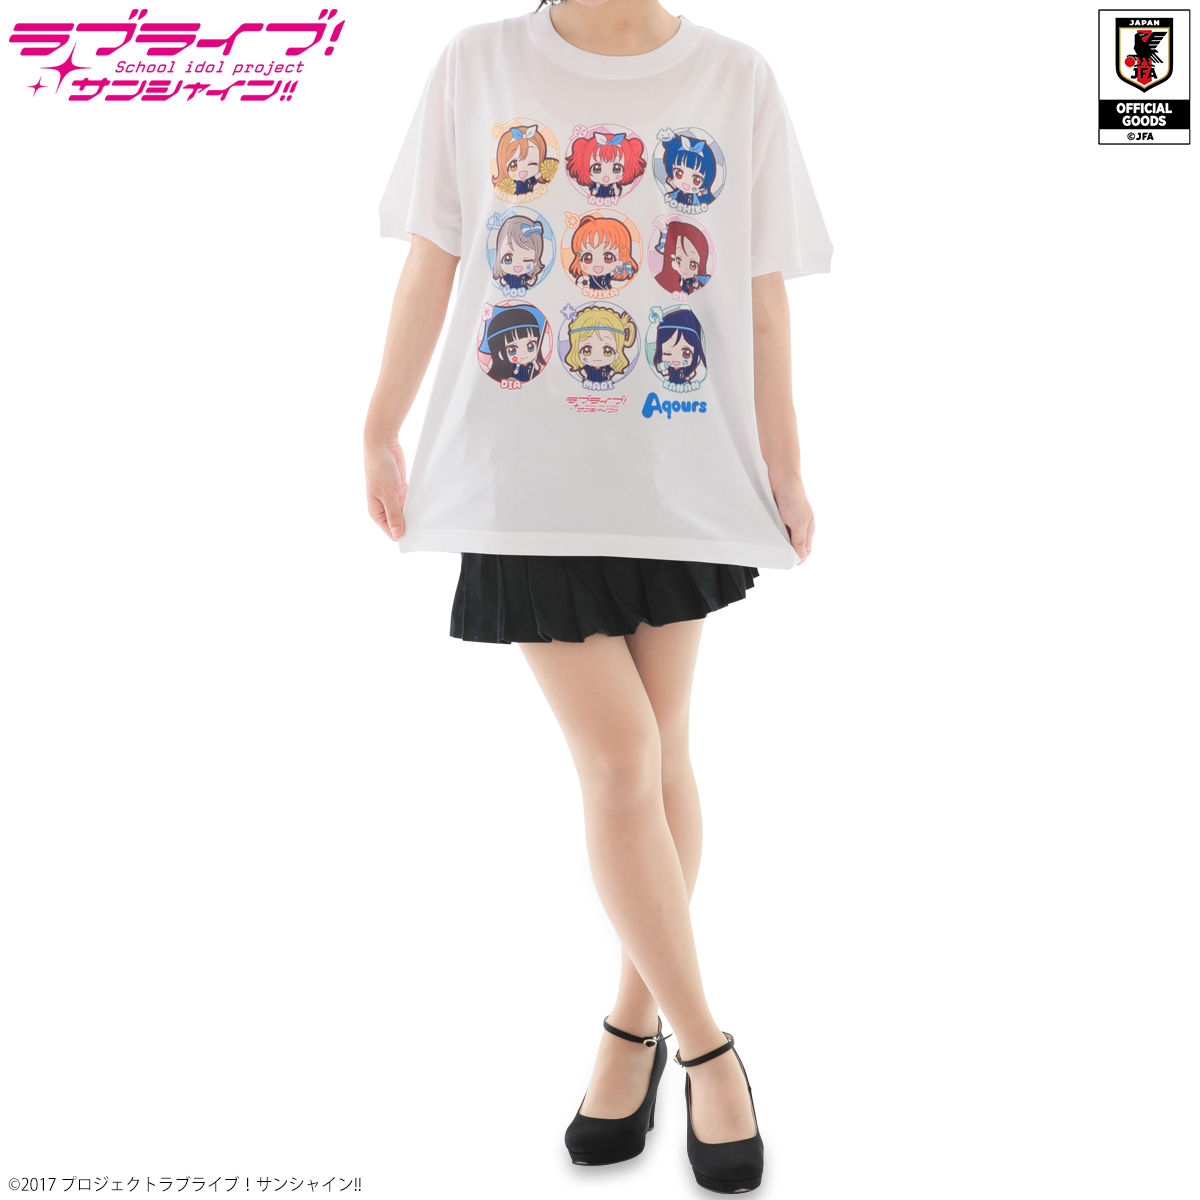 ラブライブ サンシャイン Tシャツ サッカー日本代表ver ラブライブ サンシャイン 趣味 コレクション バンダイナムコグループ公式通販サイト